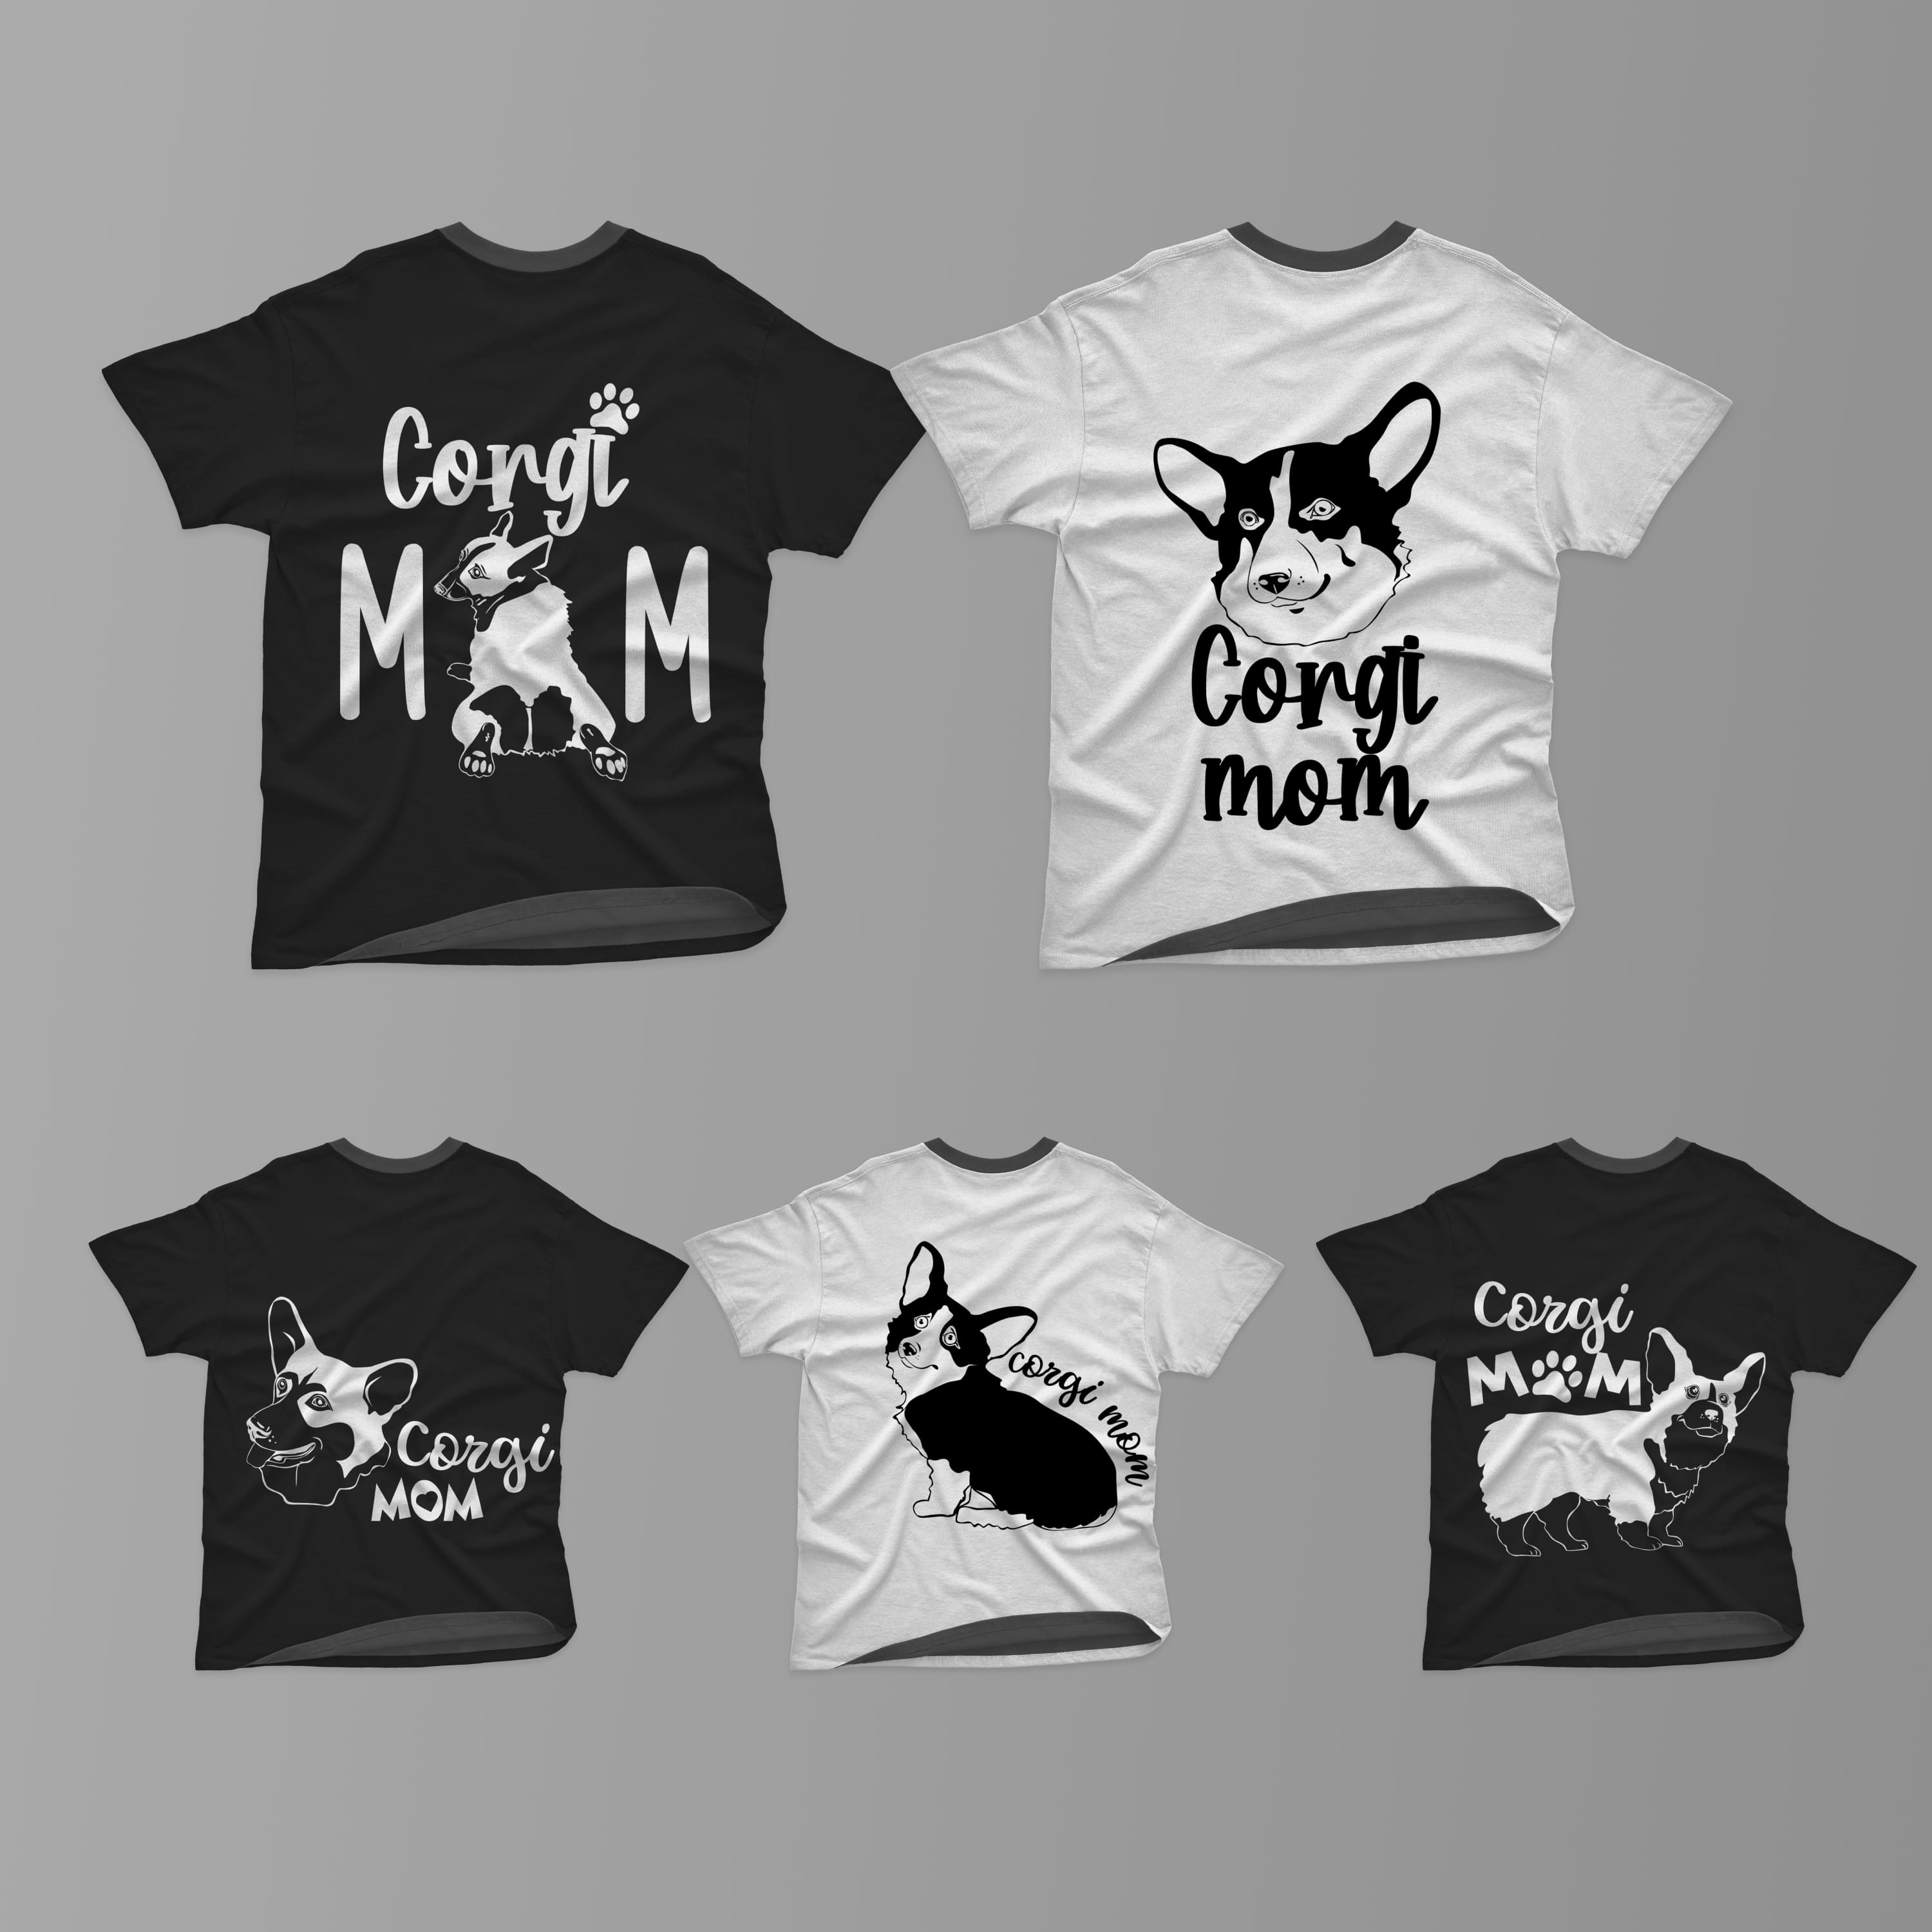 corgi mom T-shirt SVG Designs Bundle cover.